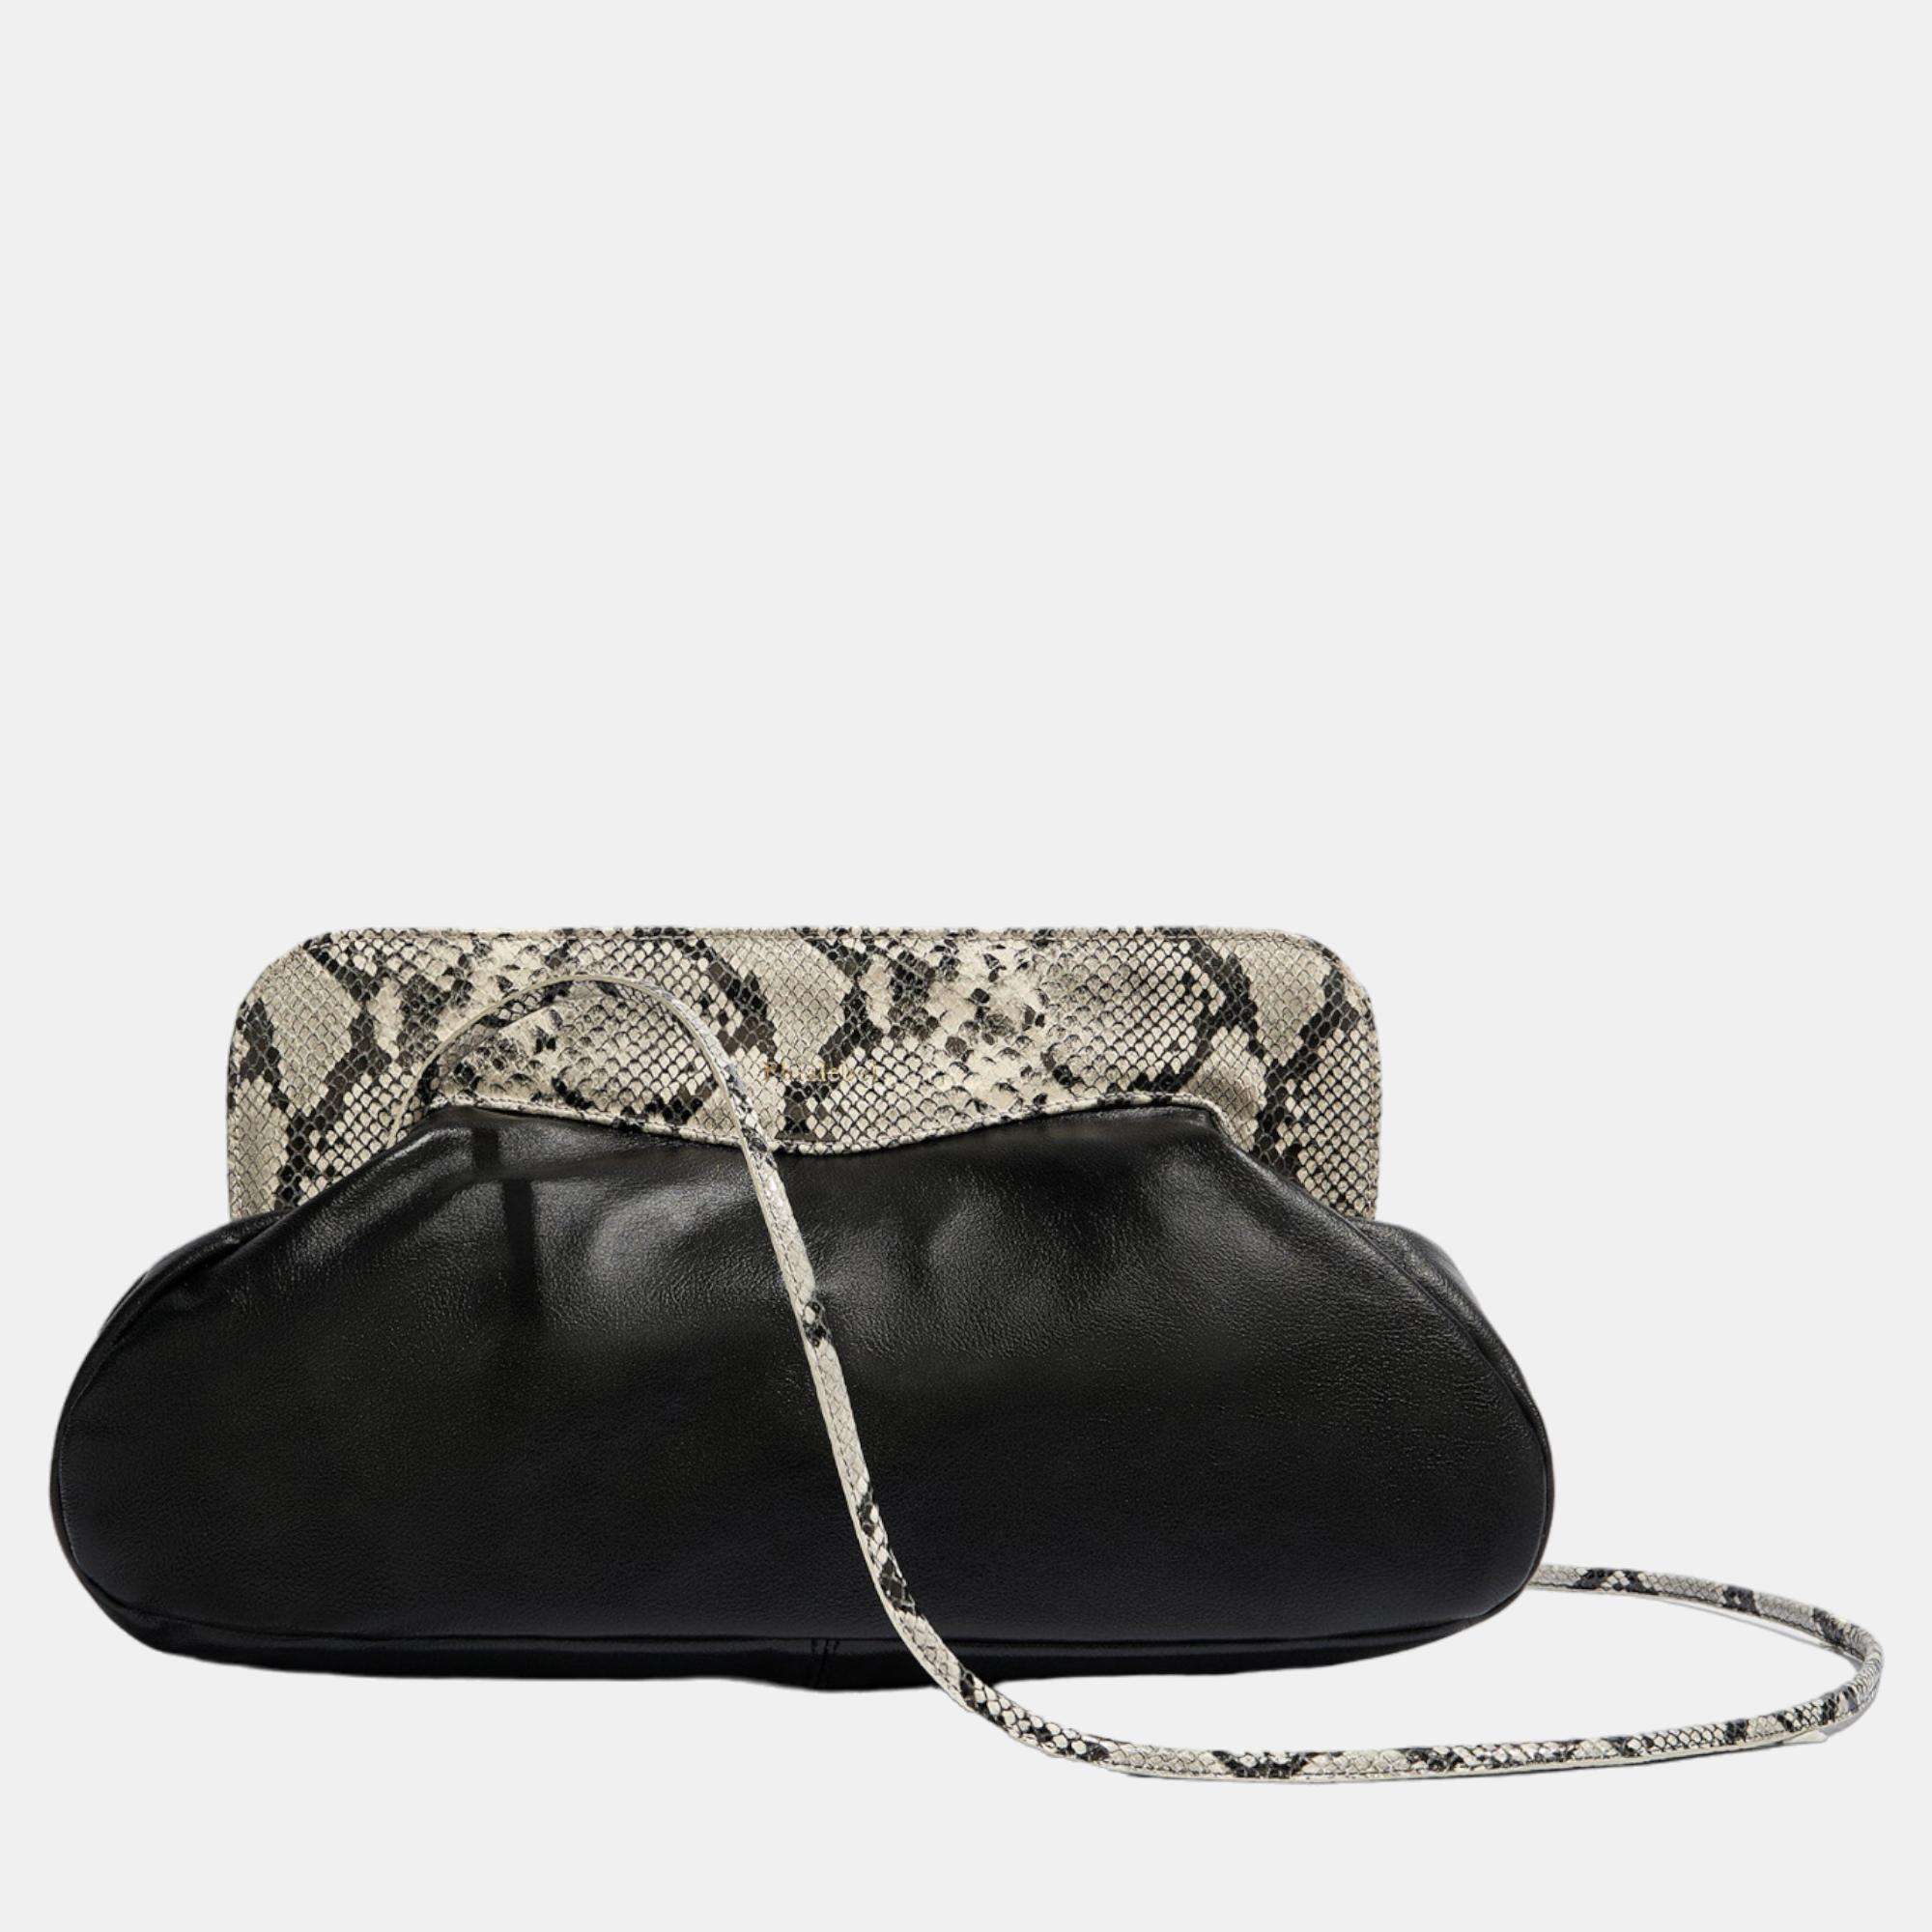 Phialebel Constanza Maxi Black & Python Shoulder Bag